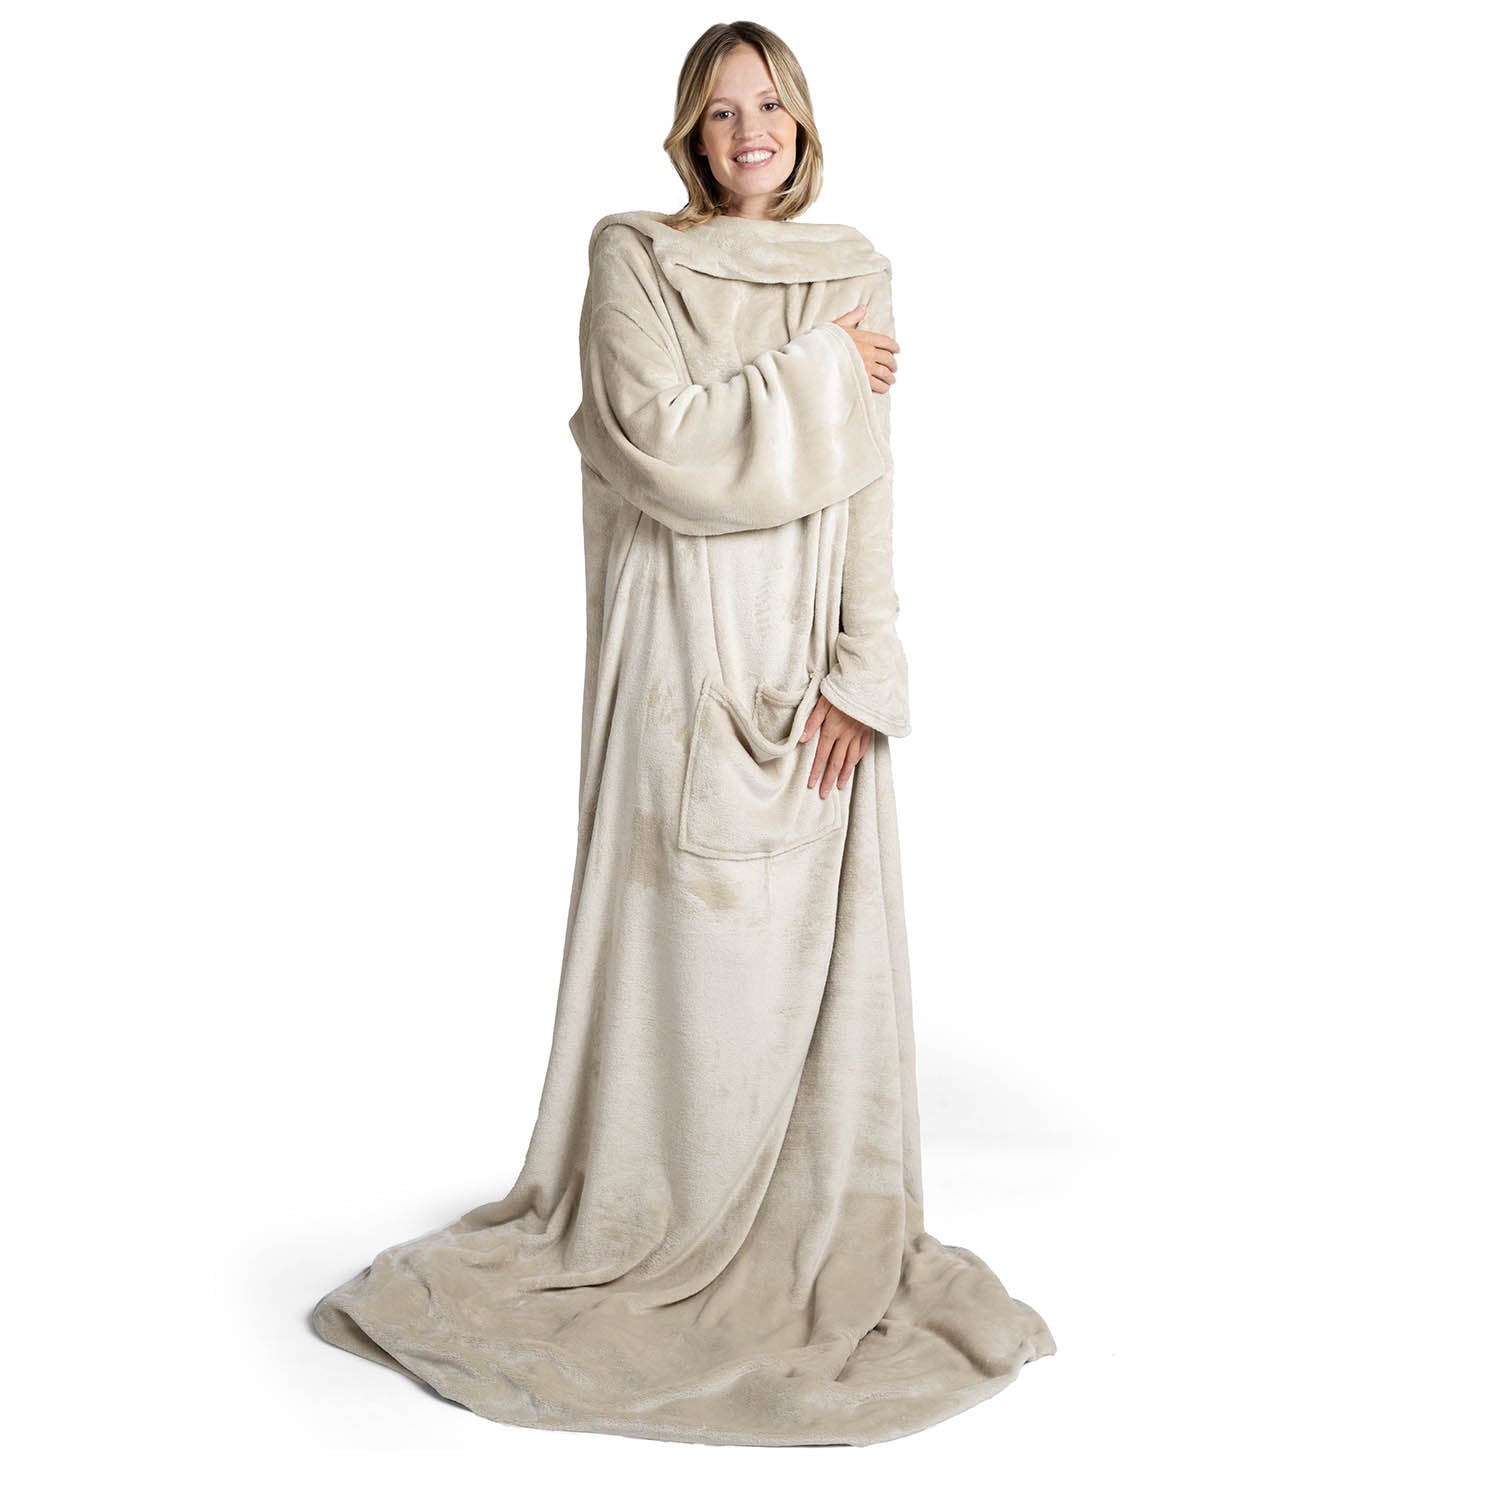 Lächelnde Frau in einem übergroßen beige flauschigen Kleidungsstück das bis zum Boden reicht steht vor weißem Hintergrund.